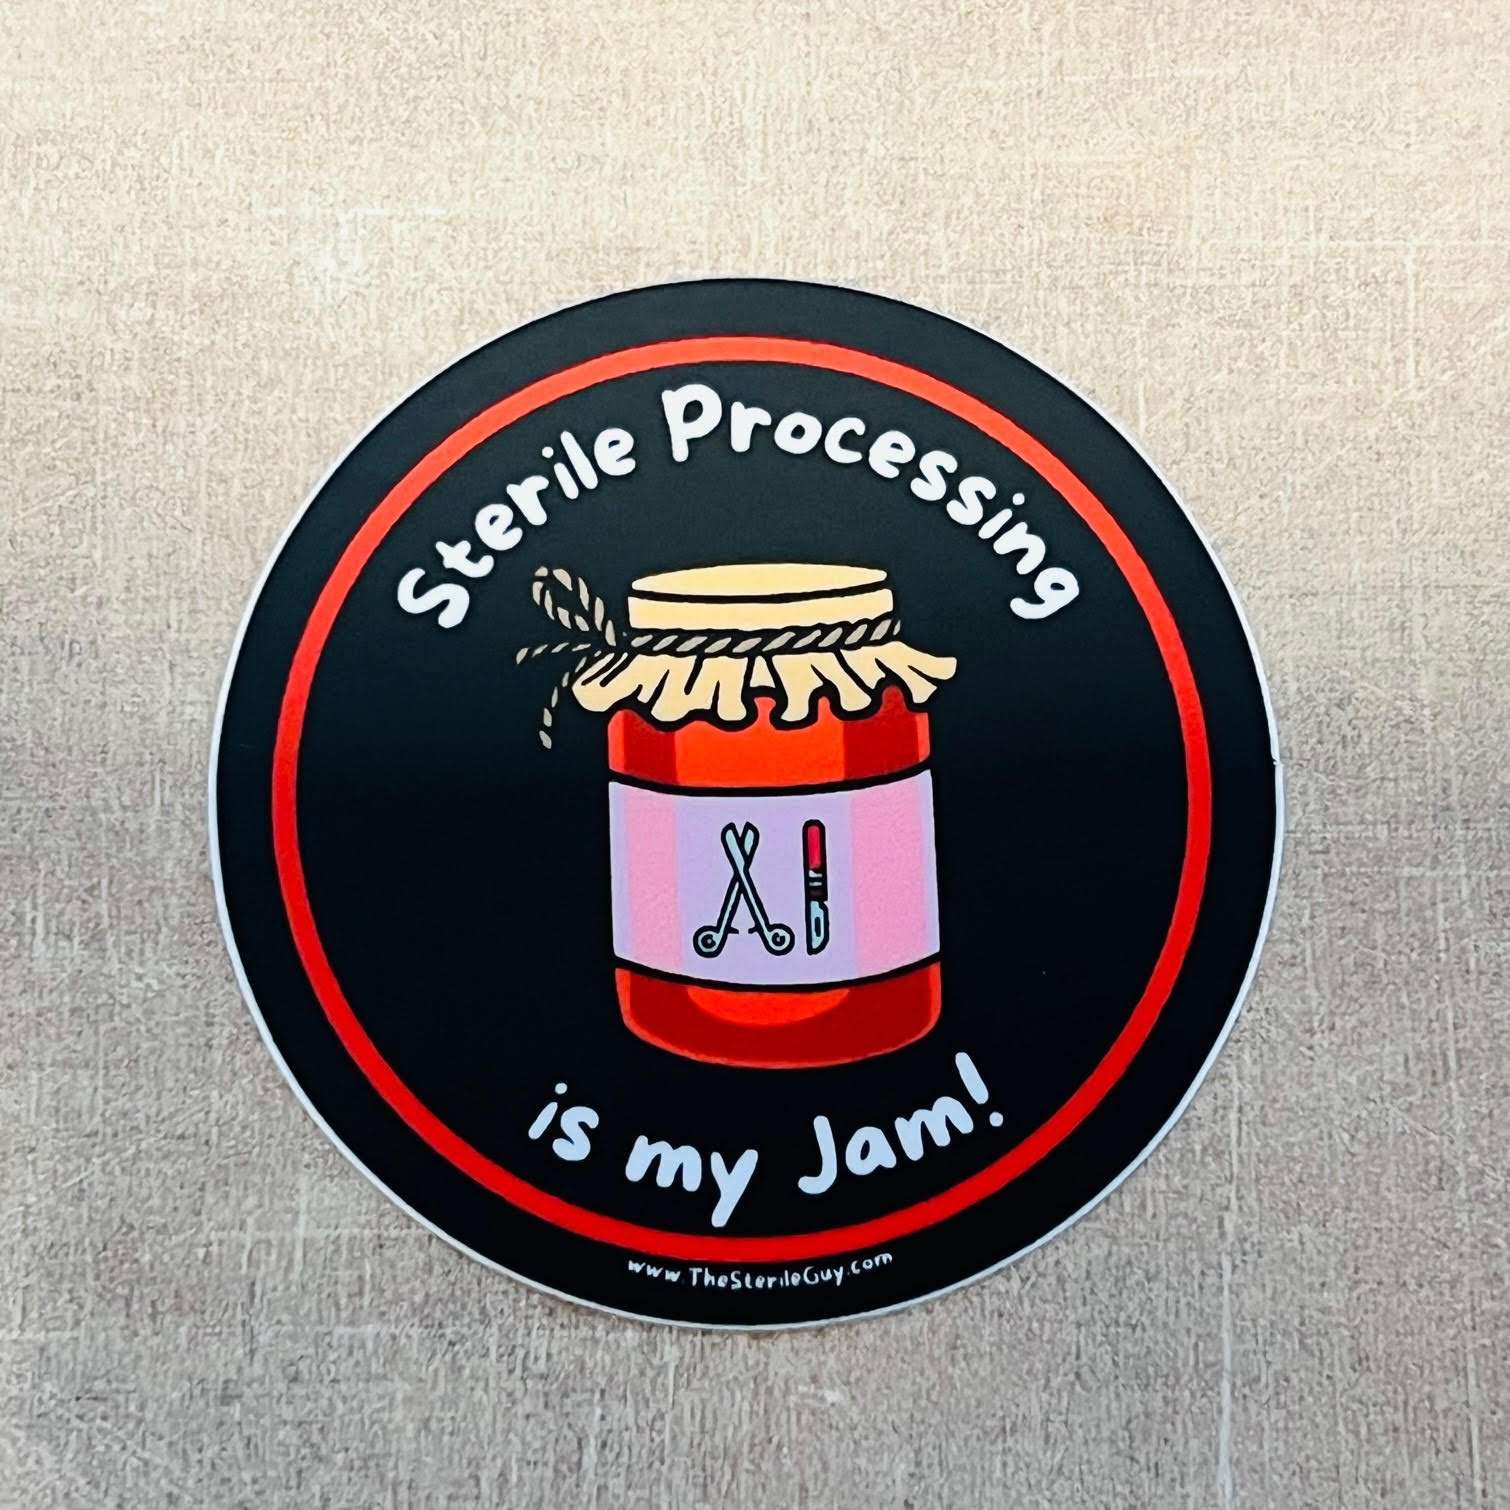 SPD Jam Sticker - The Sterile Guy LLC